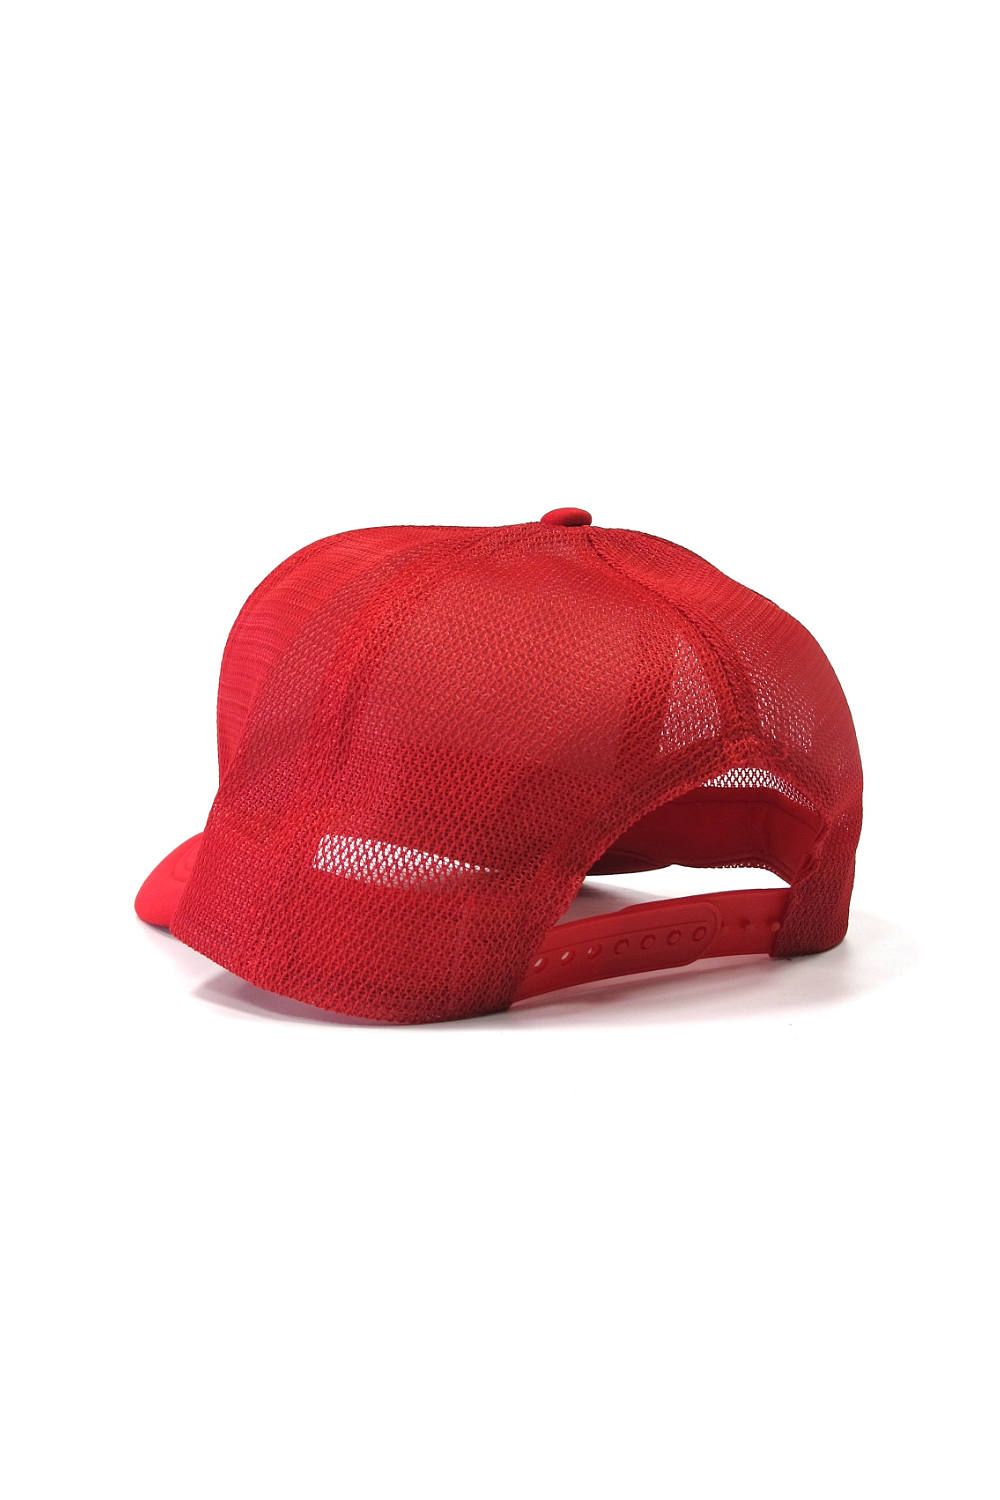 M&M CUSTOM PERFORMANCE - PRINT MESH CAP (RED) / プリントメッシュ 